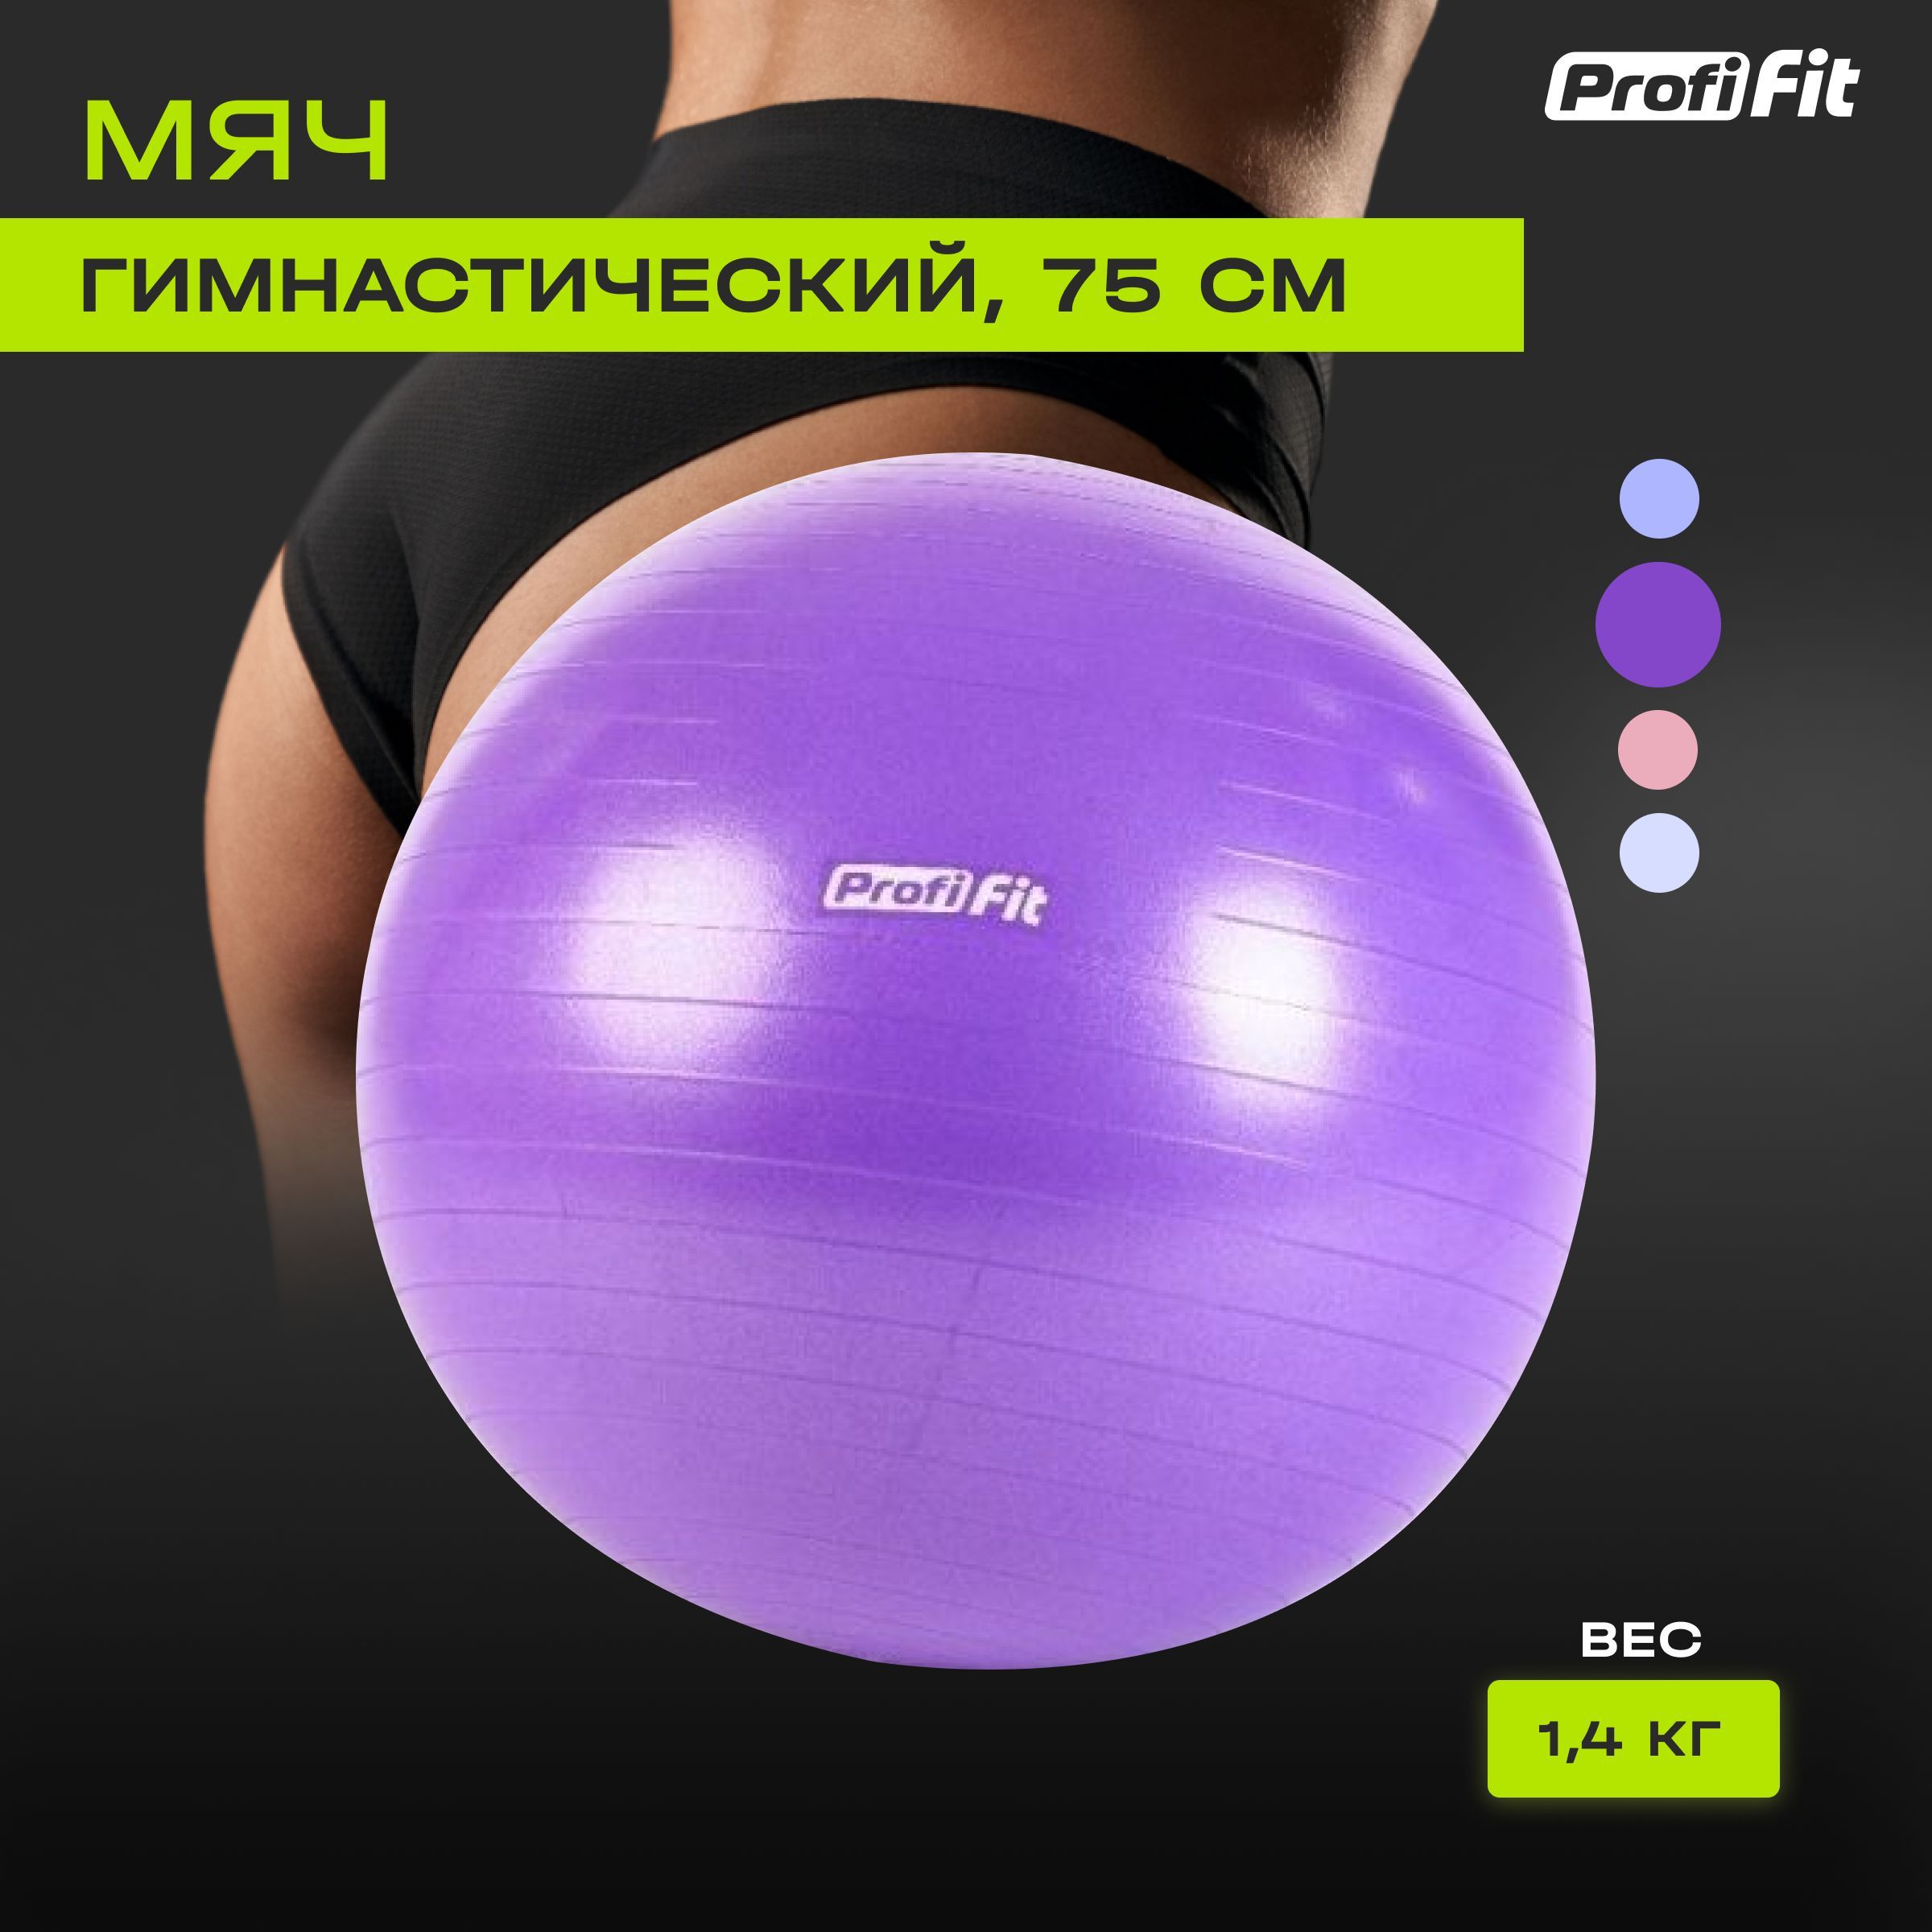 Гимнастический мяч для фитнеса (фитбол) PROFI-FIT, диаметр 75 см, антивзрыв